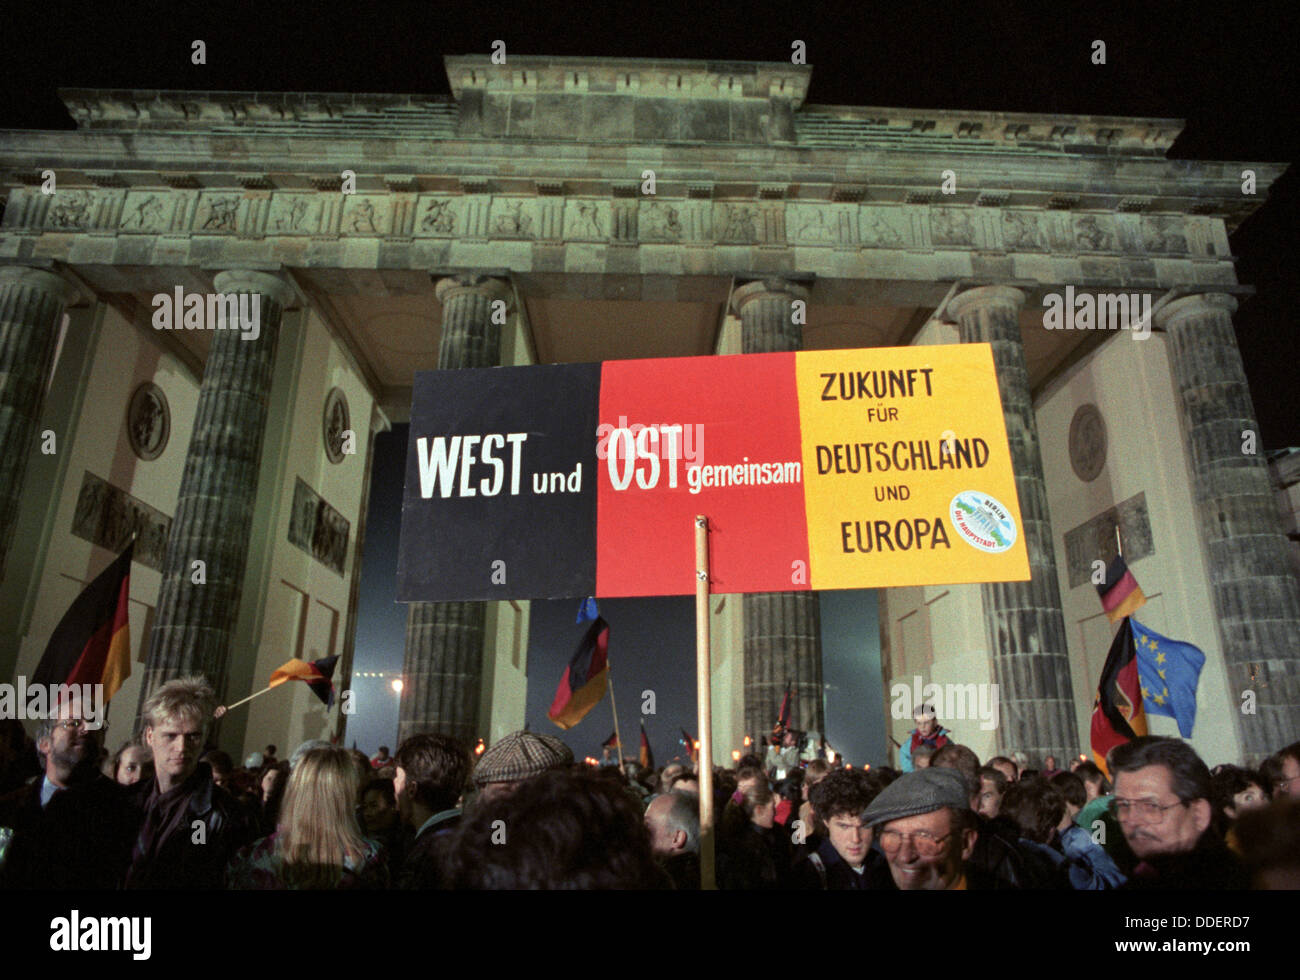 Ein Poster mit dem print "Westen und Osten - Zukunft für Deutschland und Europa" ist vor dem Brandenburger Tor in Berlin in der Nacht zum 3. Oktober 1990 statt. Mit dem Beitritt der DDR zur Bundesrepublik Deutschland sind die deutschen schließlich in einen souveränen Staat 45 Jahre nach dem Ende des zweiten Weltkriegs wieder vereint. Stockfoto